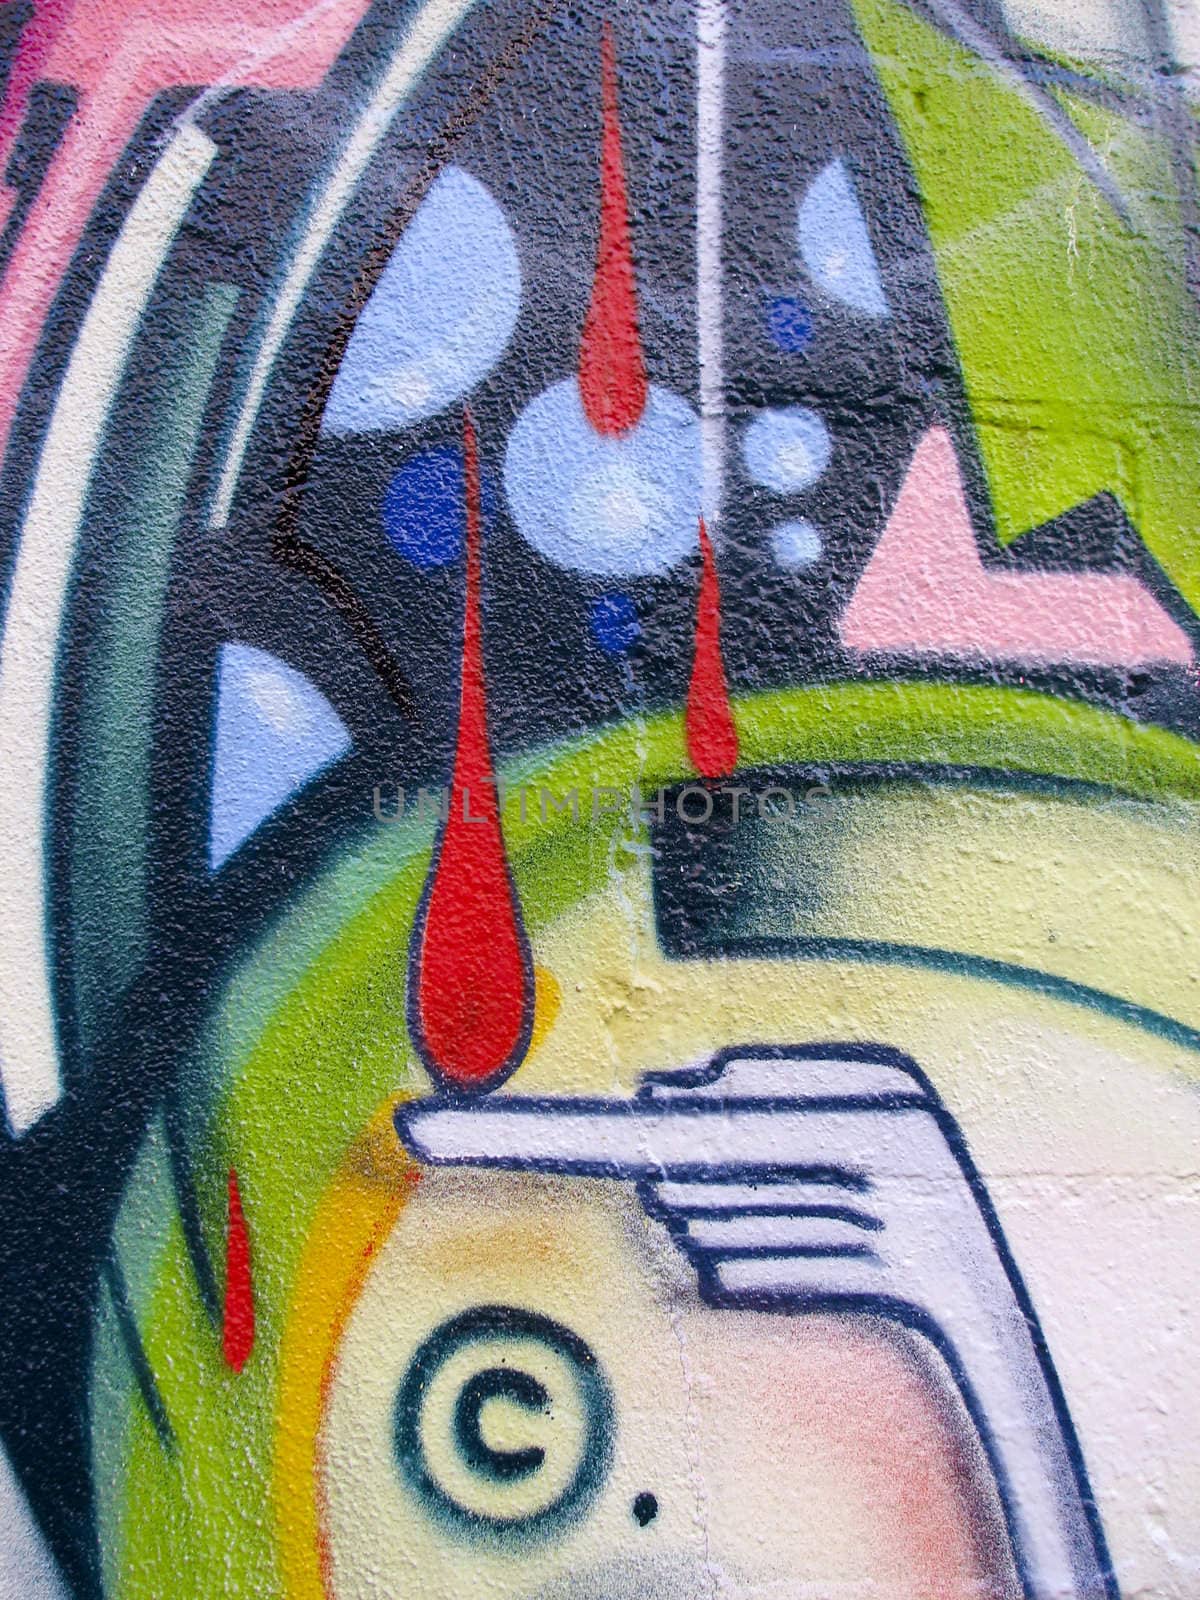 Bright graffiti painted on brick wall by ADavis